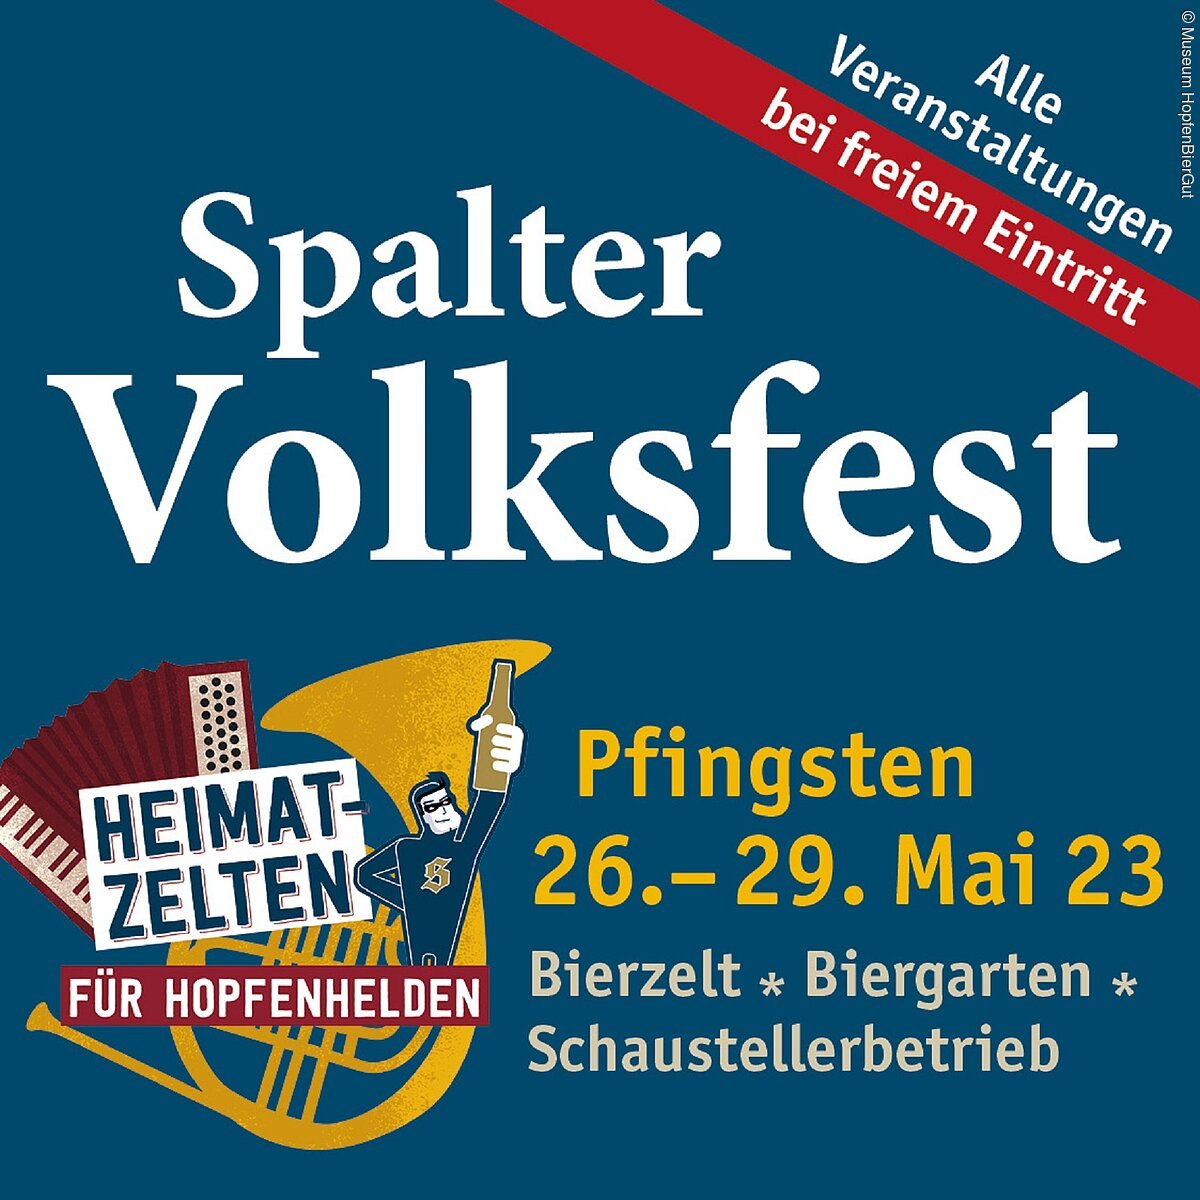 Spalter Volksfest